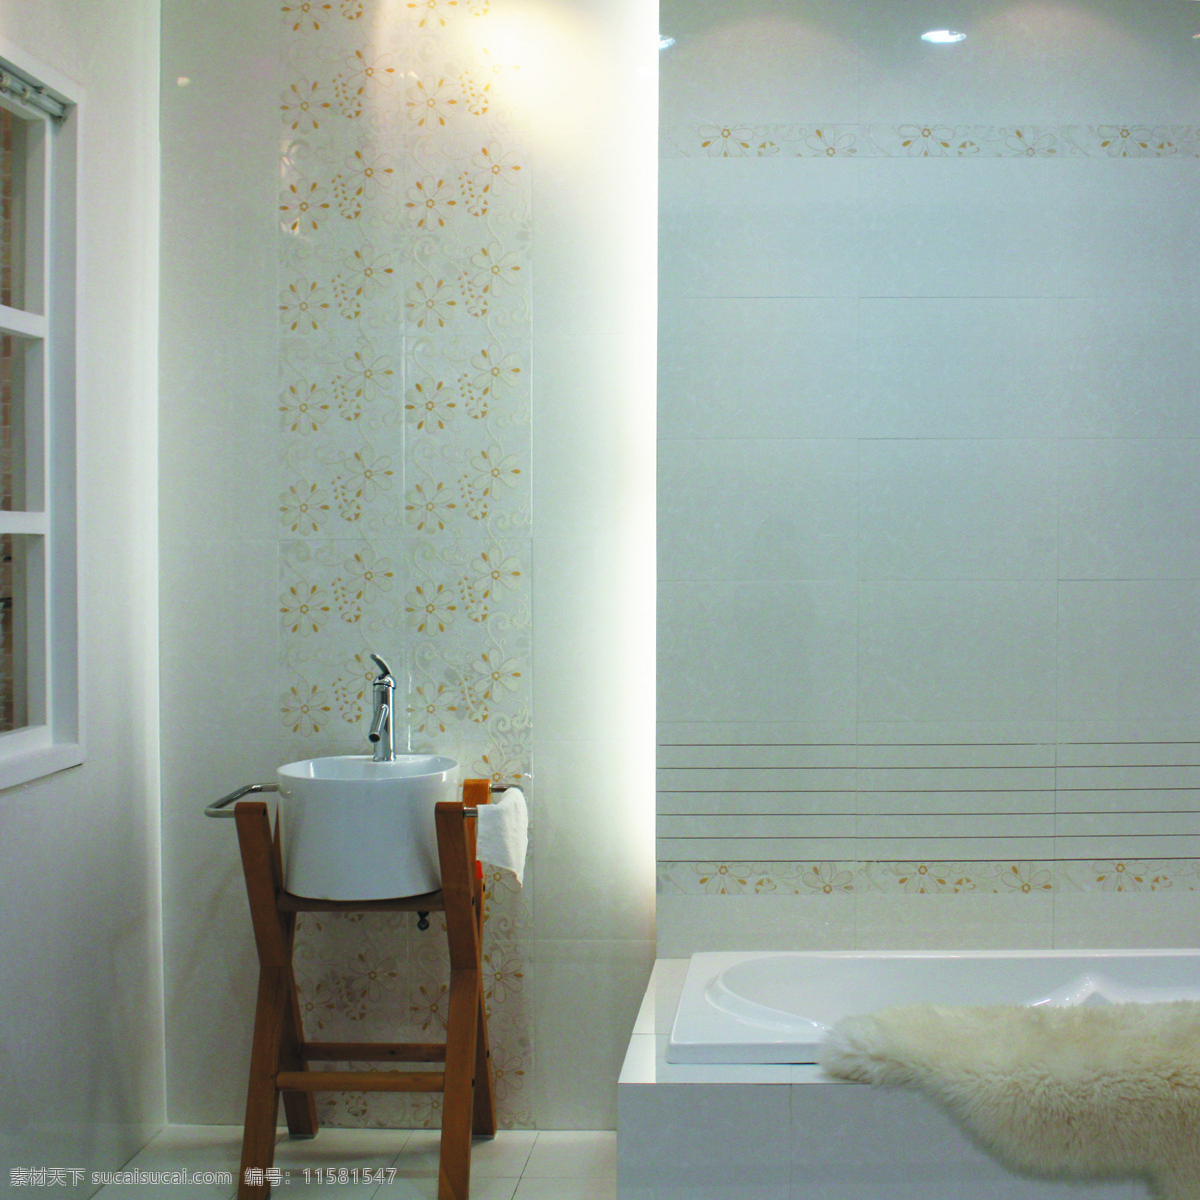 浴室 瓷砖 家居 建筑园林 室内摄影 浴缸 浴室瓷砖 家居装饰素材 室内装饰用图